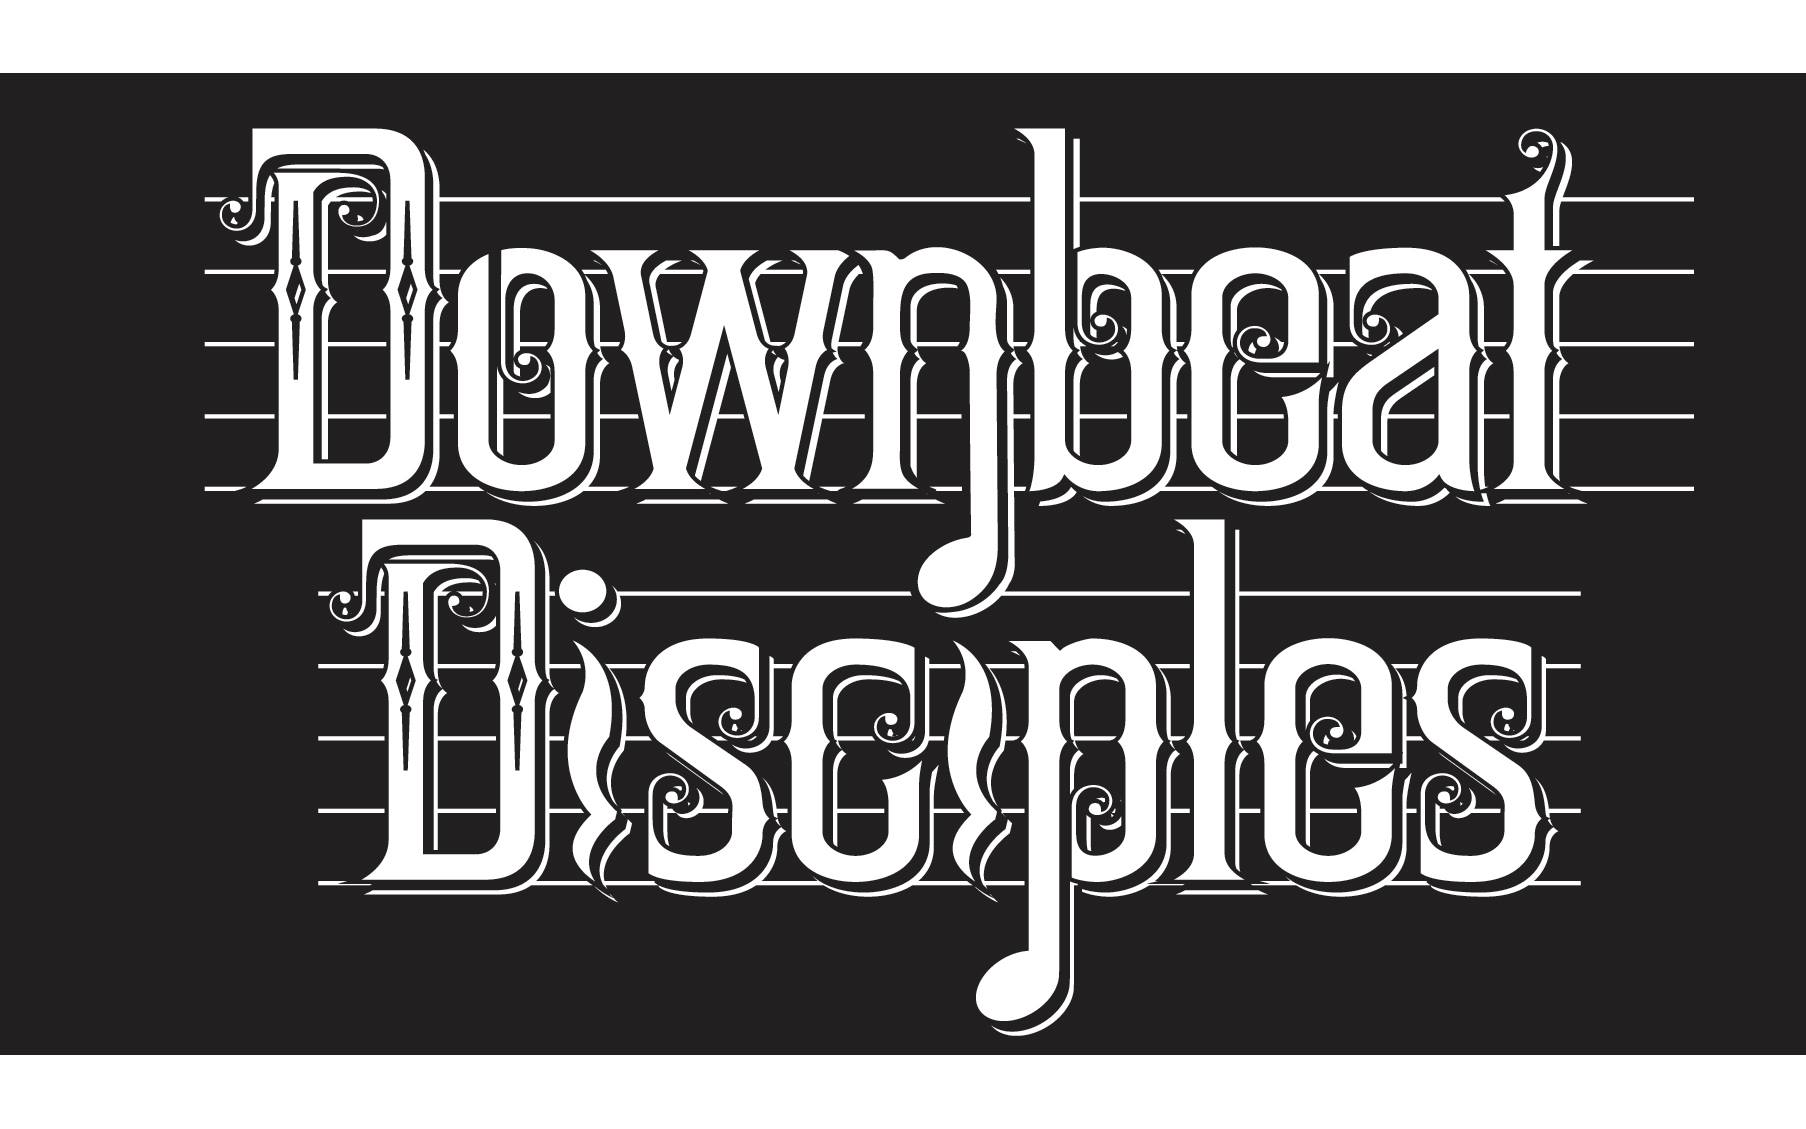 Downbeat Disciples